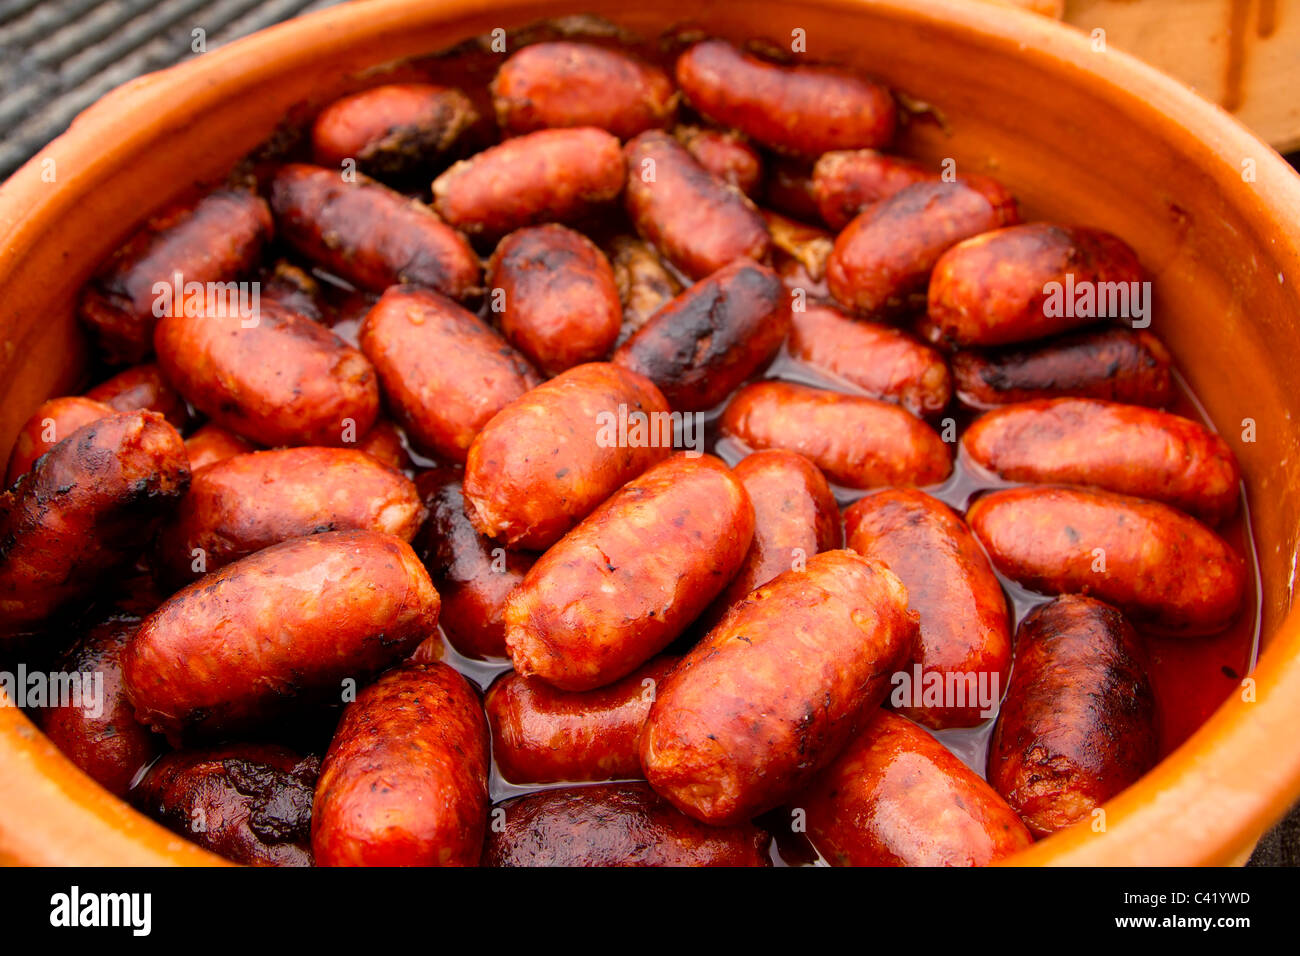 La saucisse chorizo espagnol rouge nourriture malsaine de l'Espagne Banque D'Images